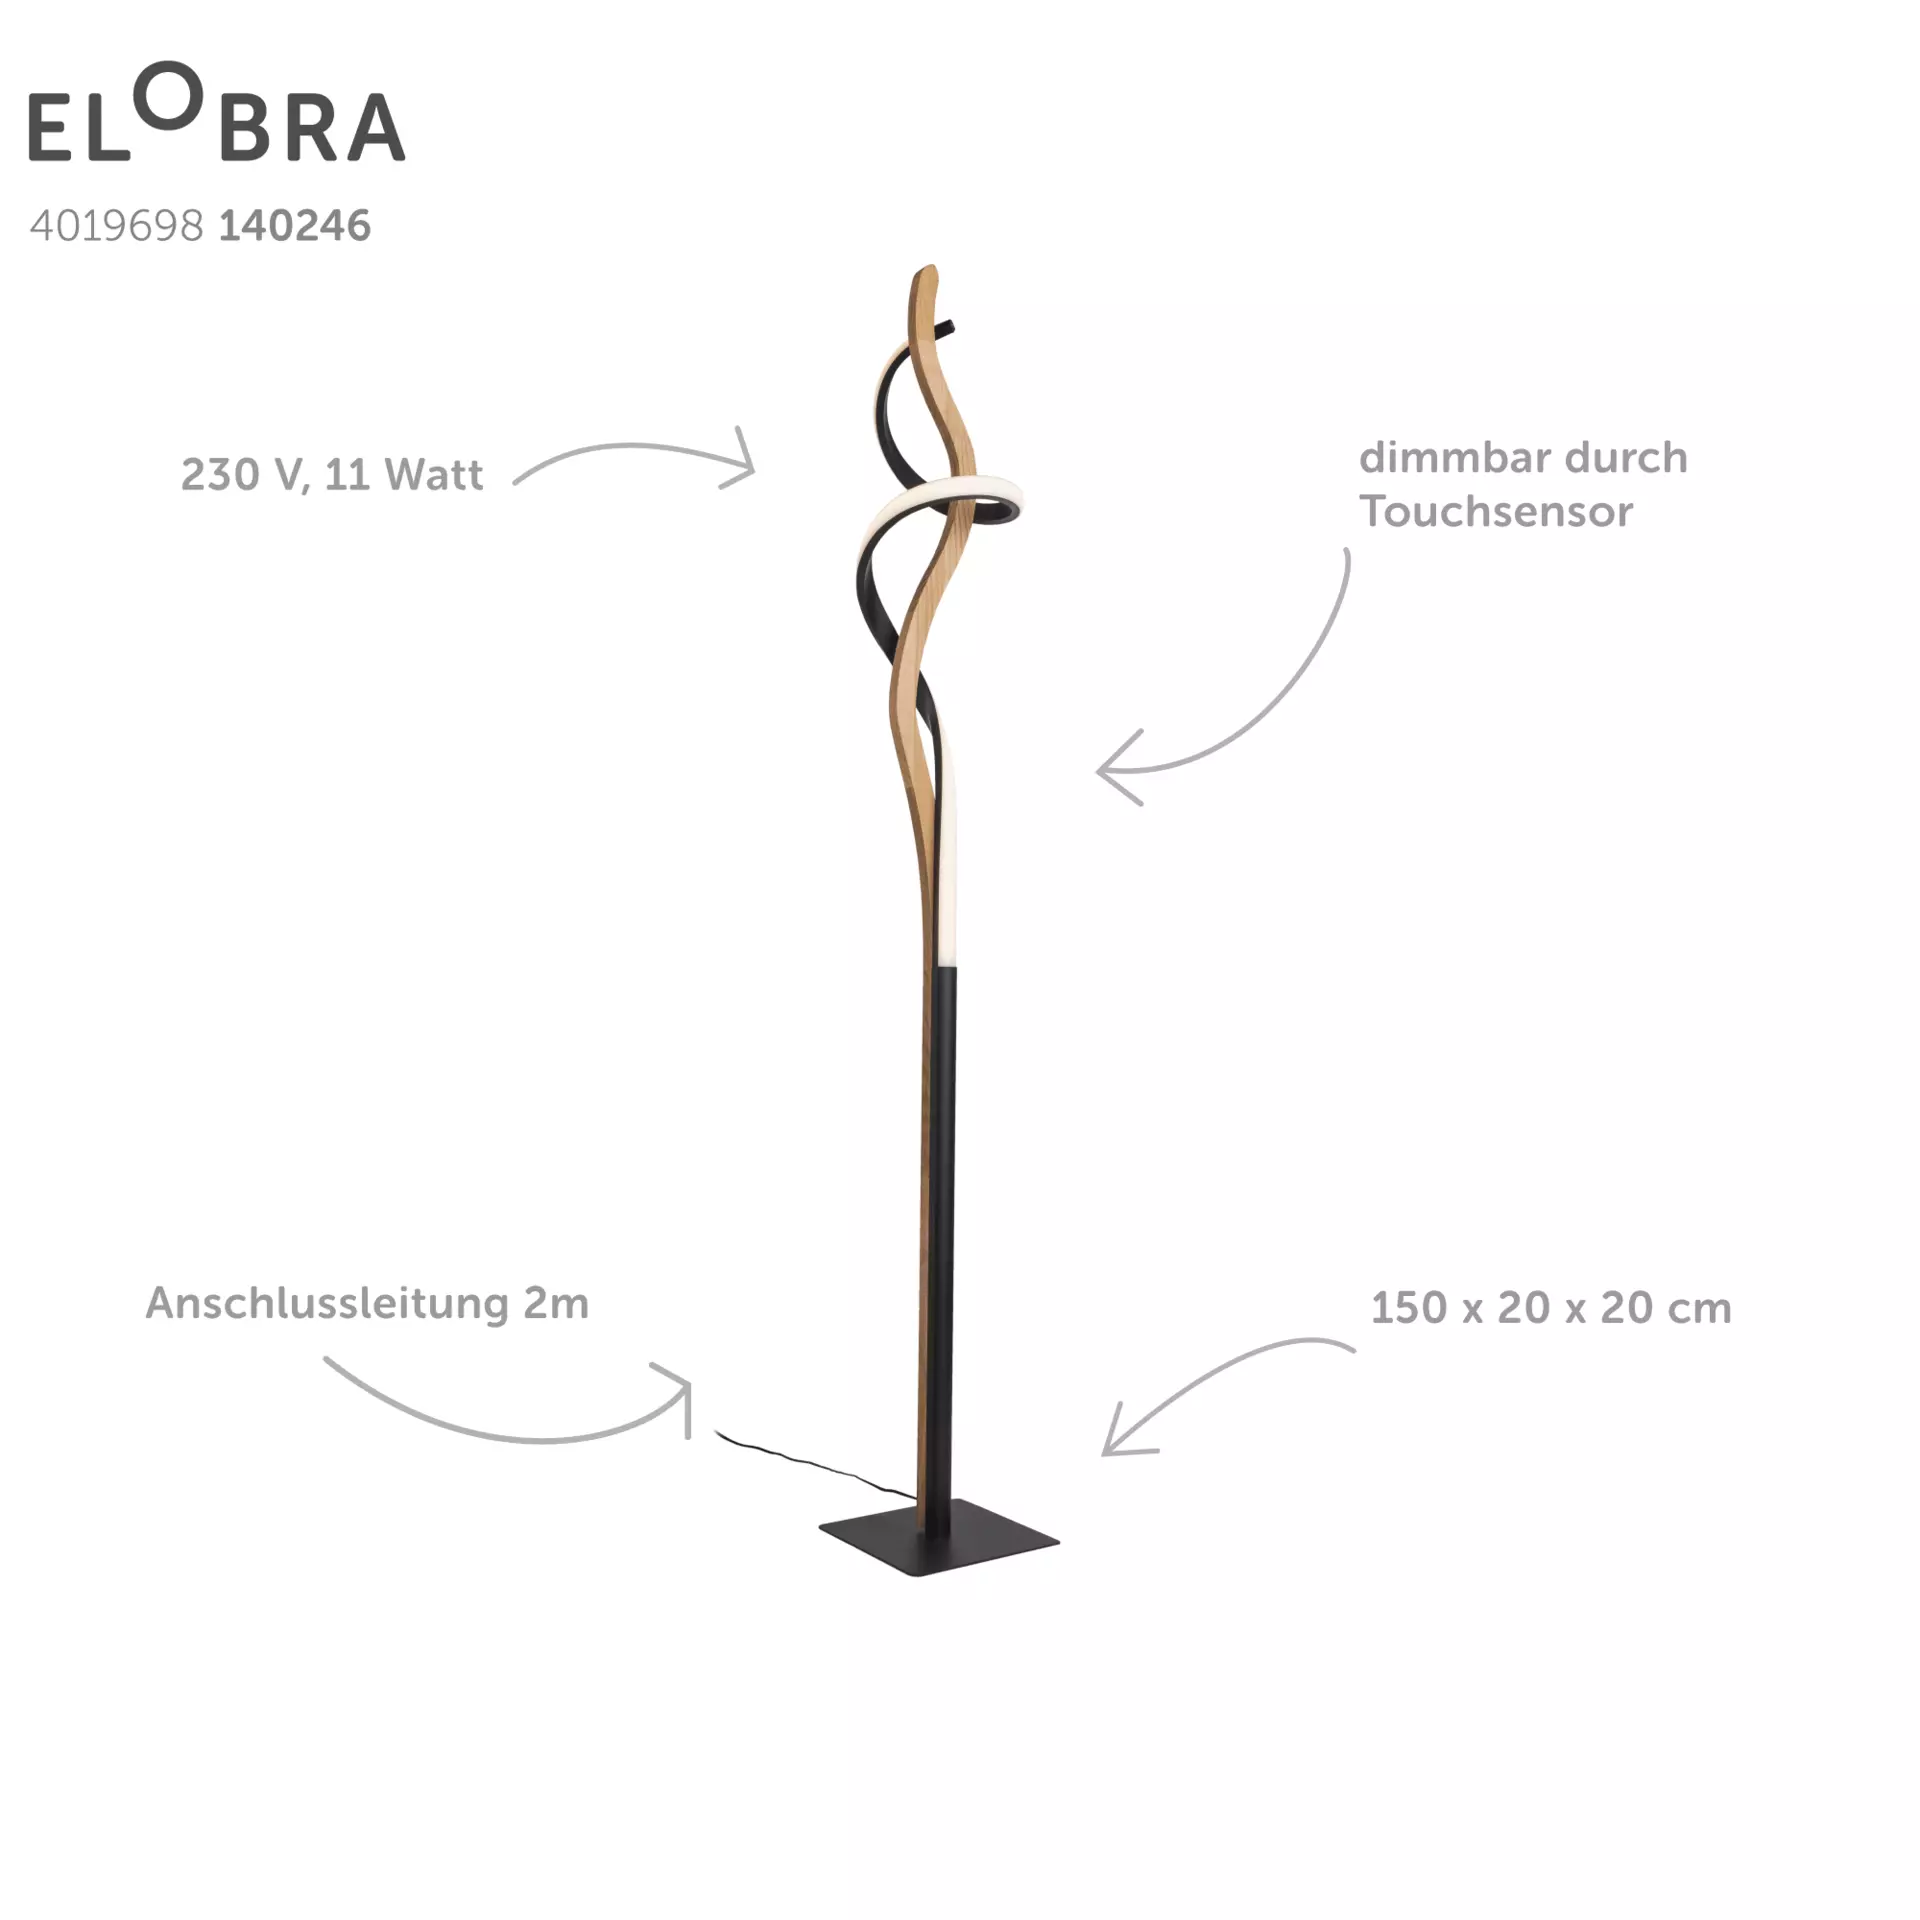 Stehleuchte ARGENTINA Elobra Metall 20 x 150 x 20 cm